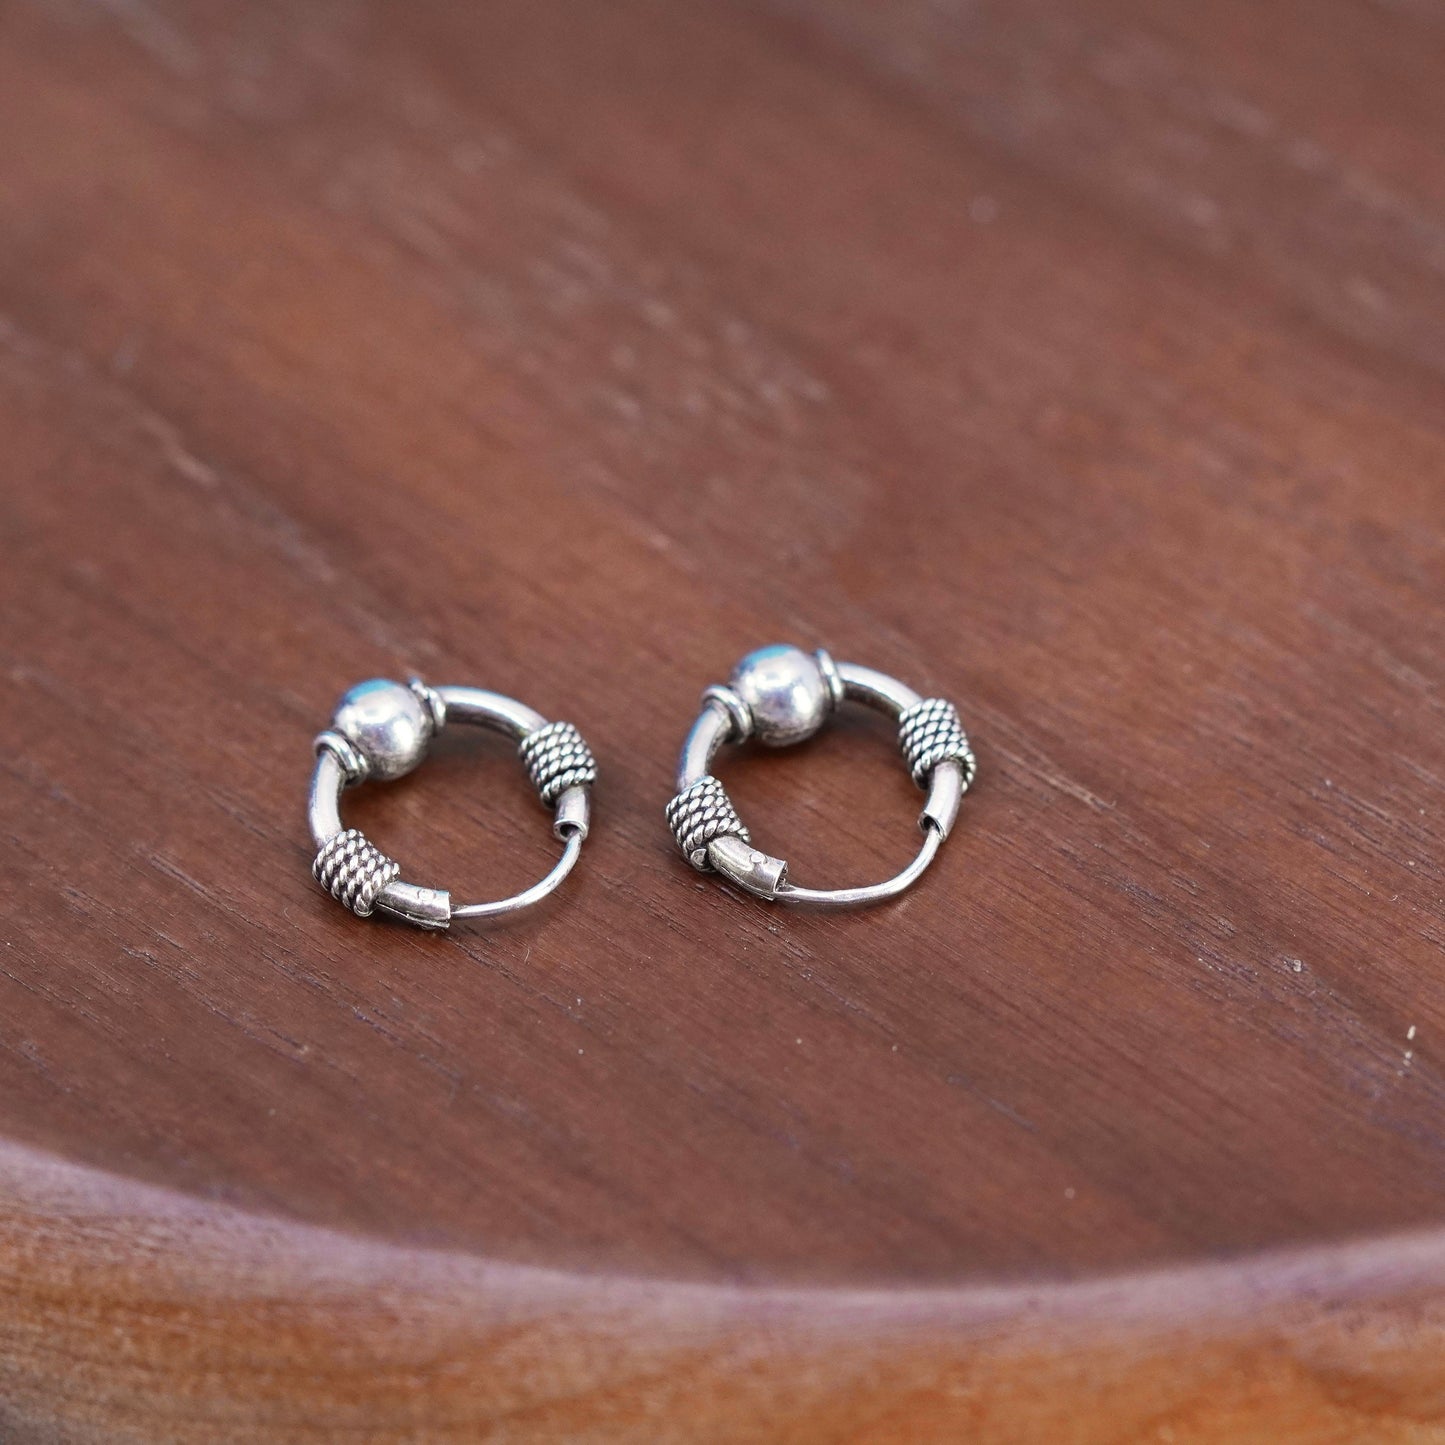 0.5”, Sterling silver handmade earrings, solid 925 silver textured hoops huggie